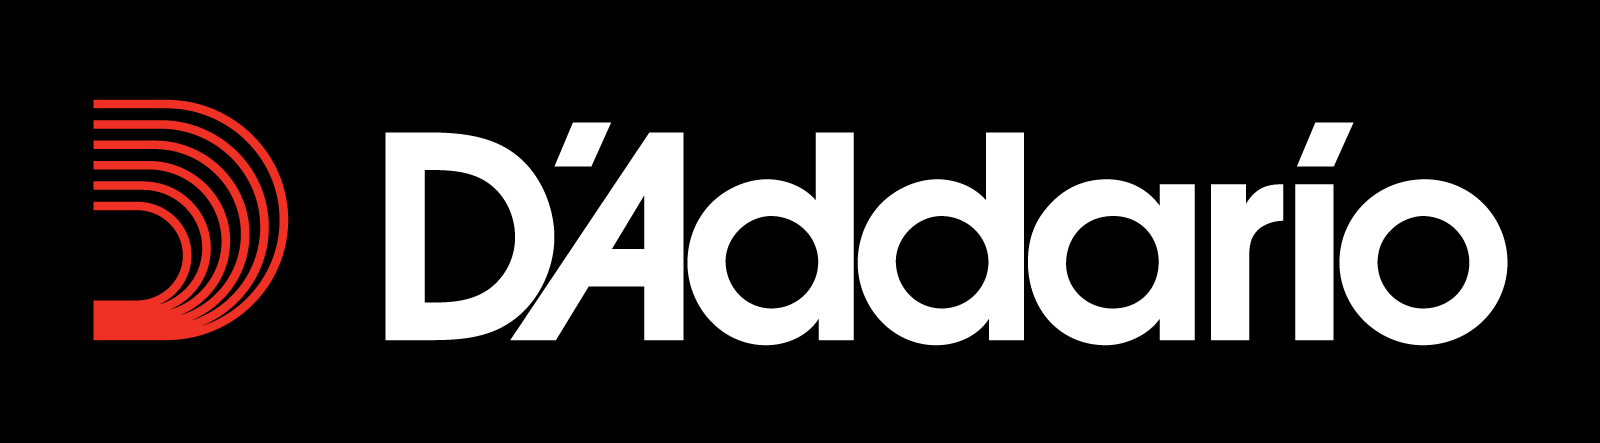 Daddario Logo